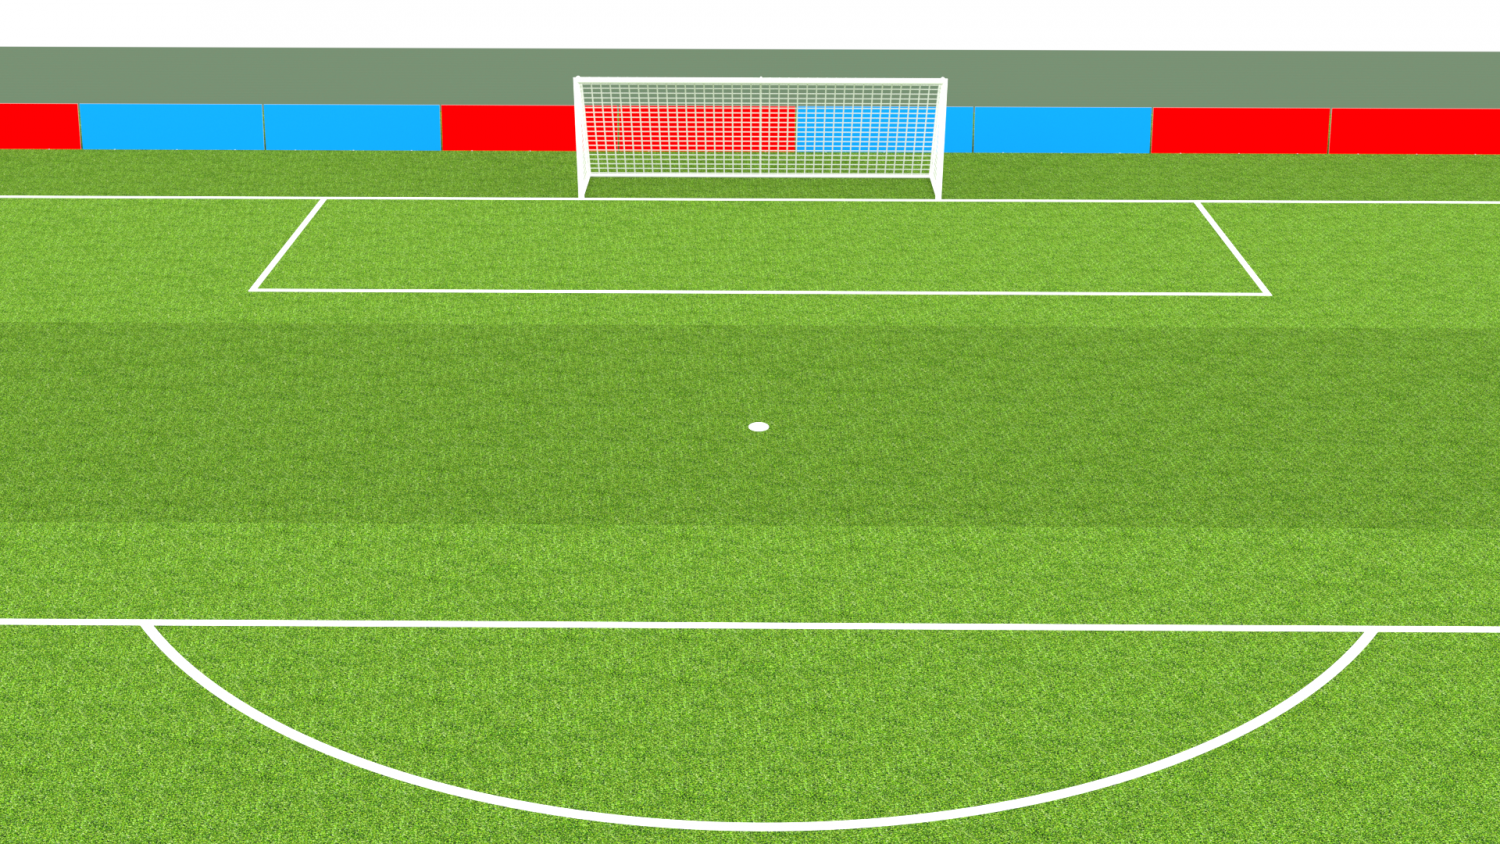 Futebol de Botão / Button Soccer, 3D CAD Model Library